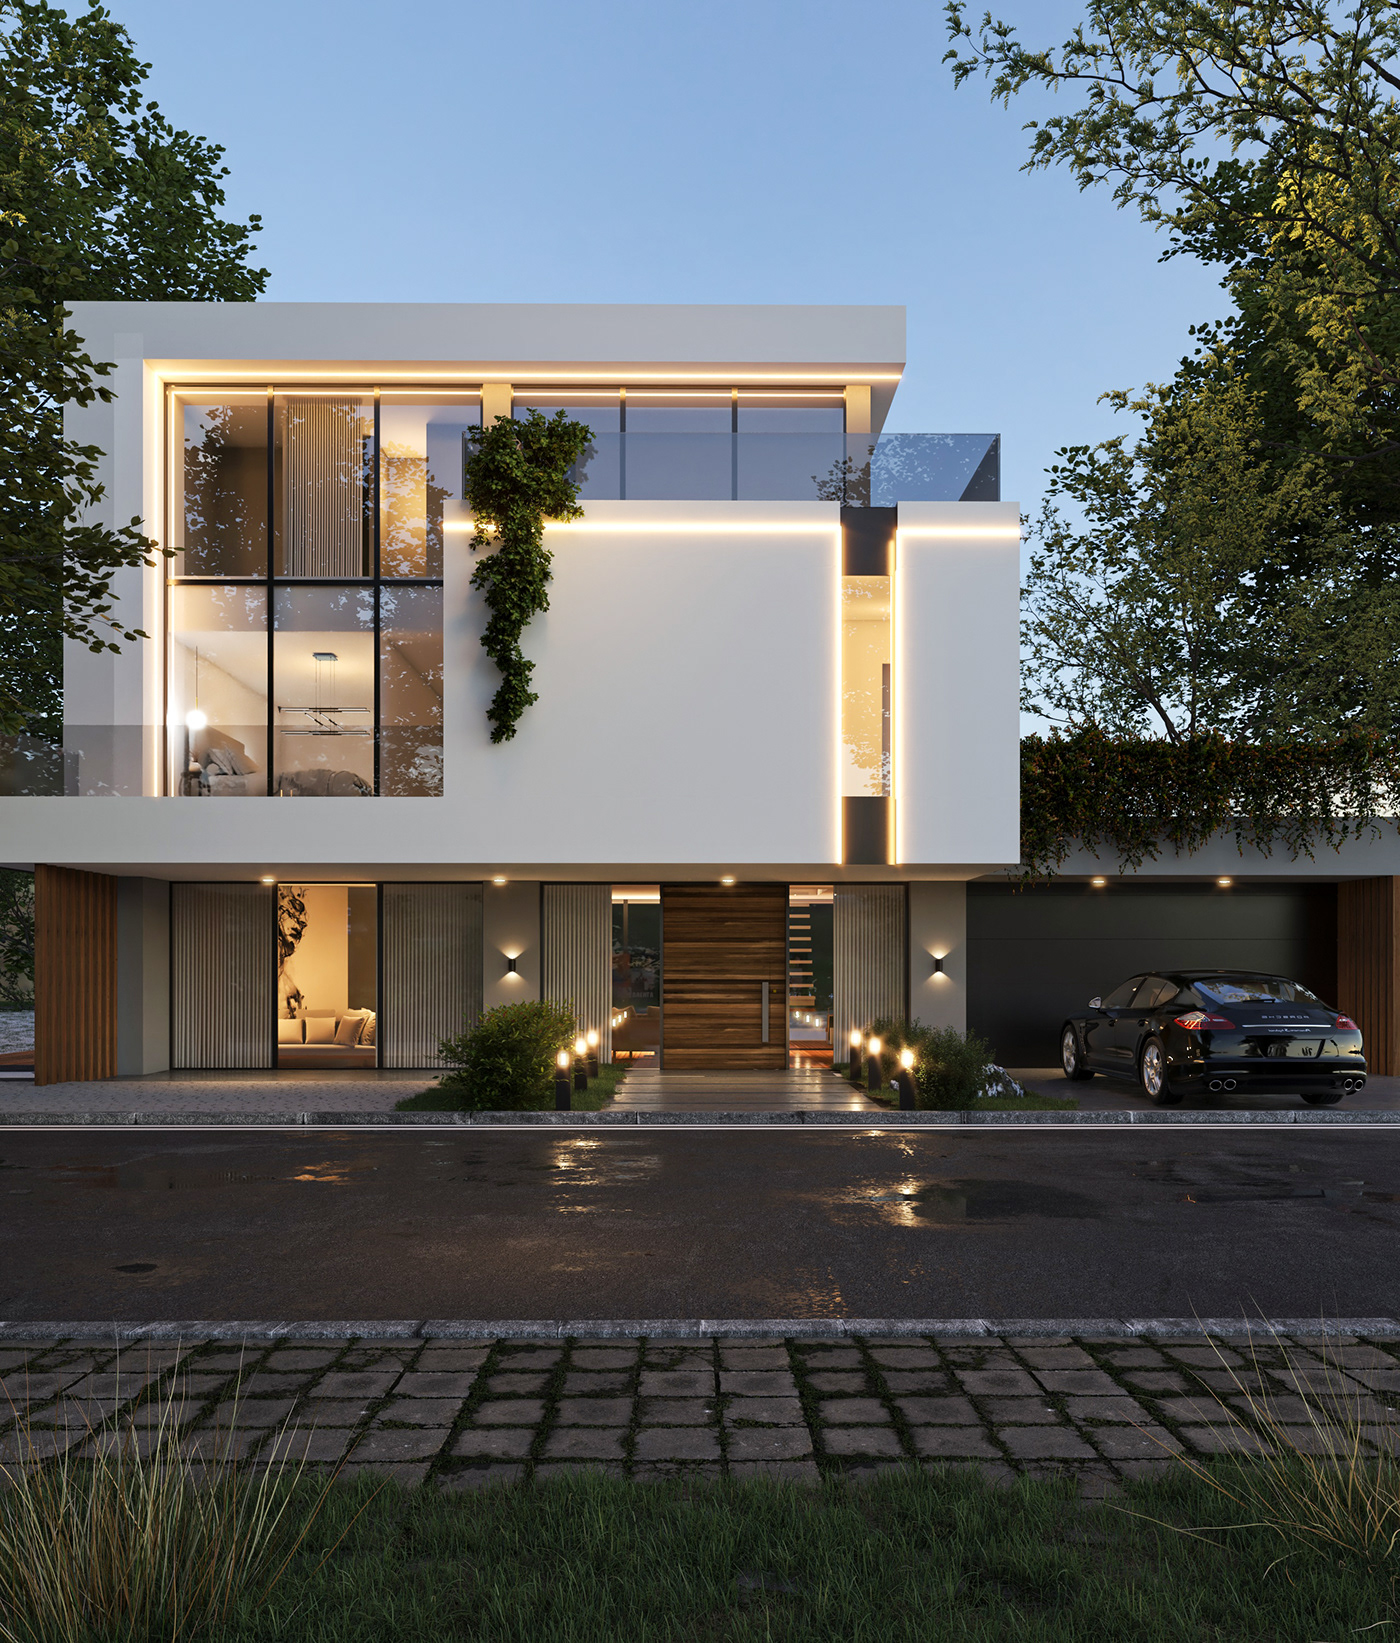 architecture exterior Villa visualization vray modern Render 3ds max CGI archviz